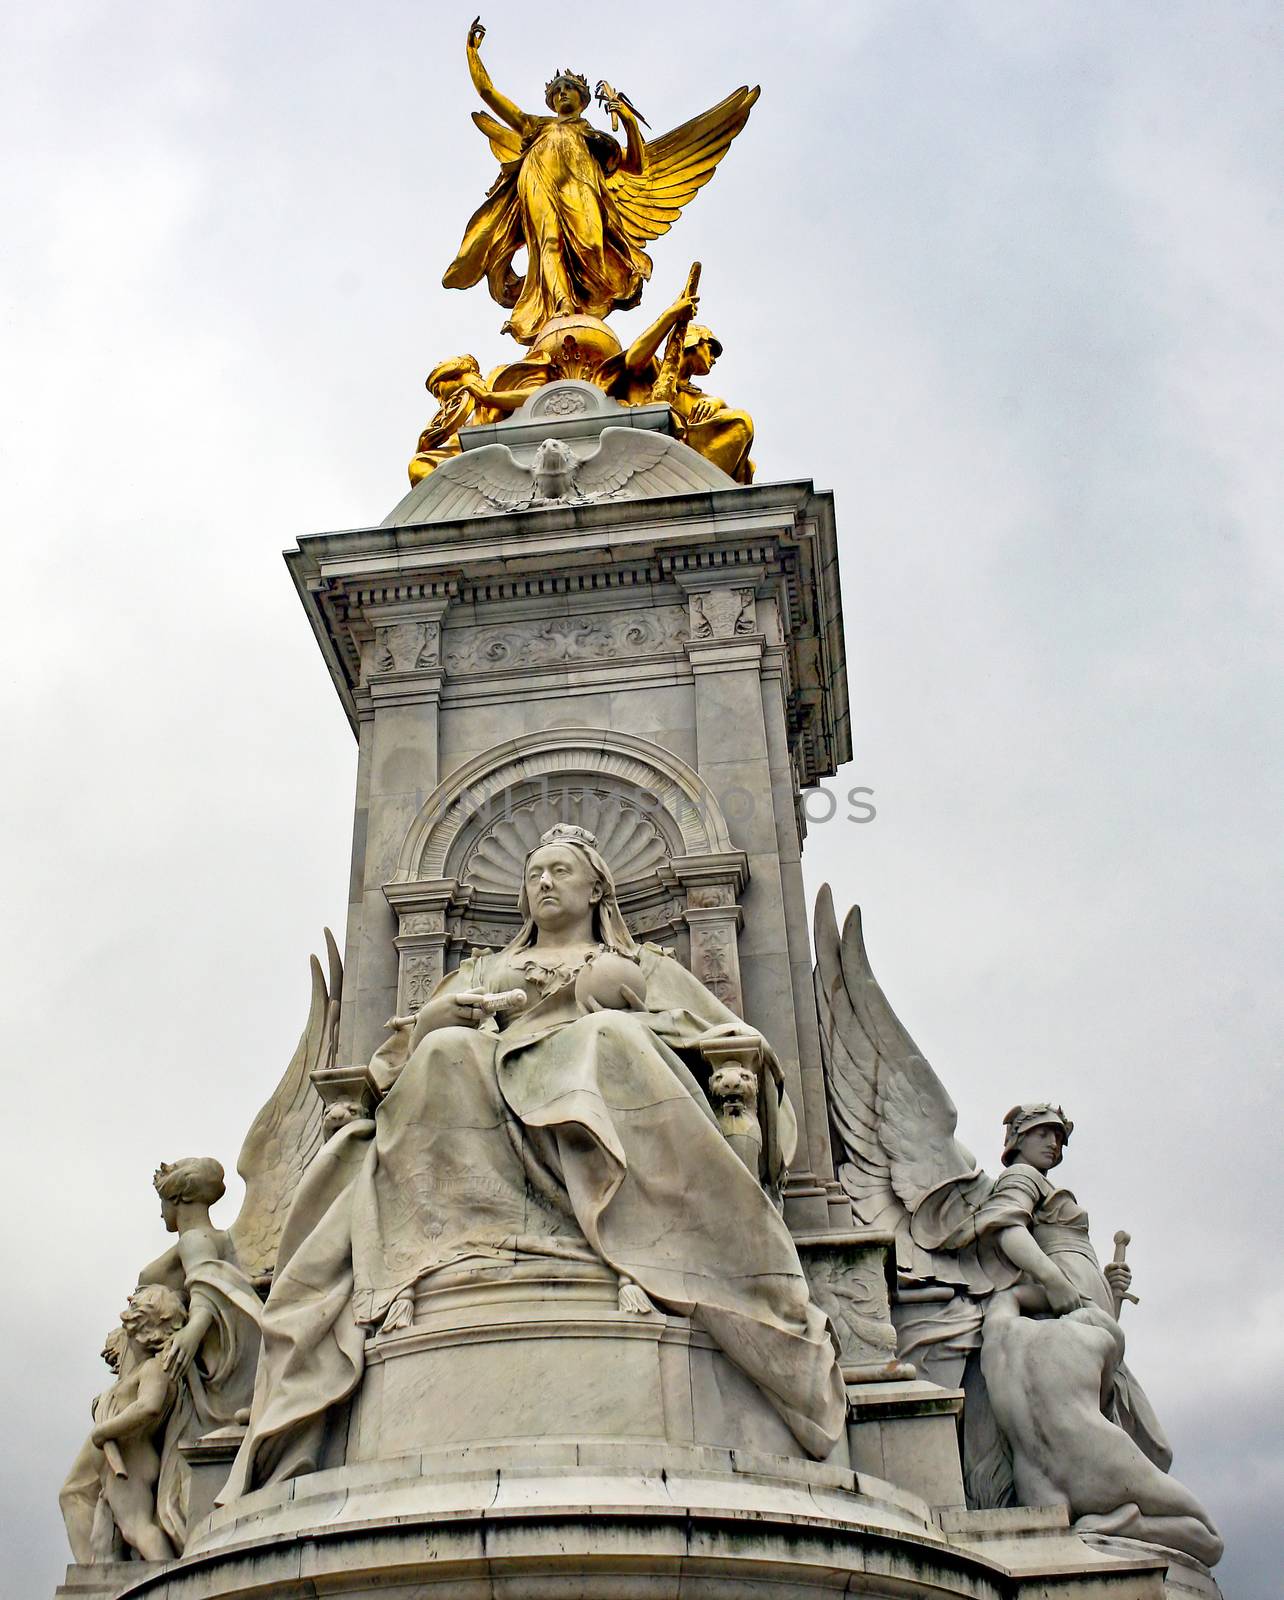 Queen Victoria Memorial by quackersnaps